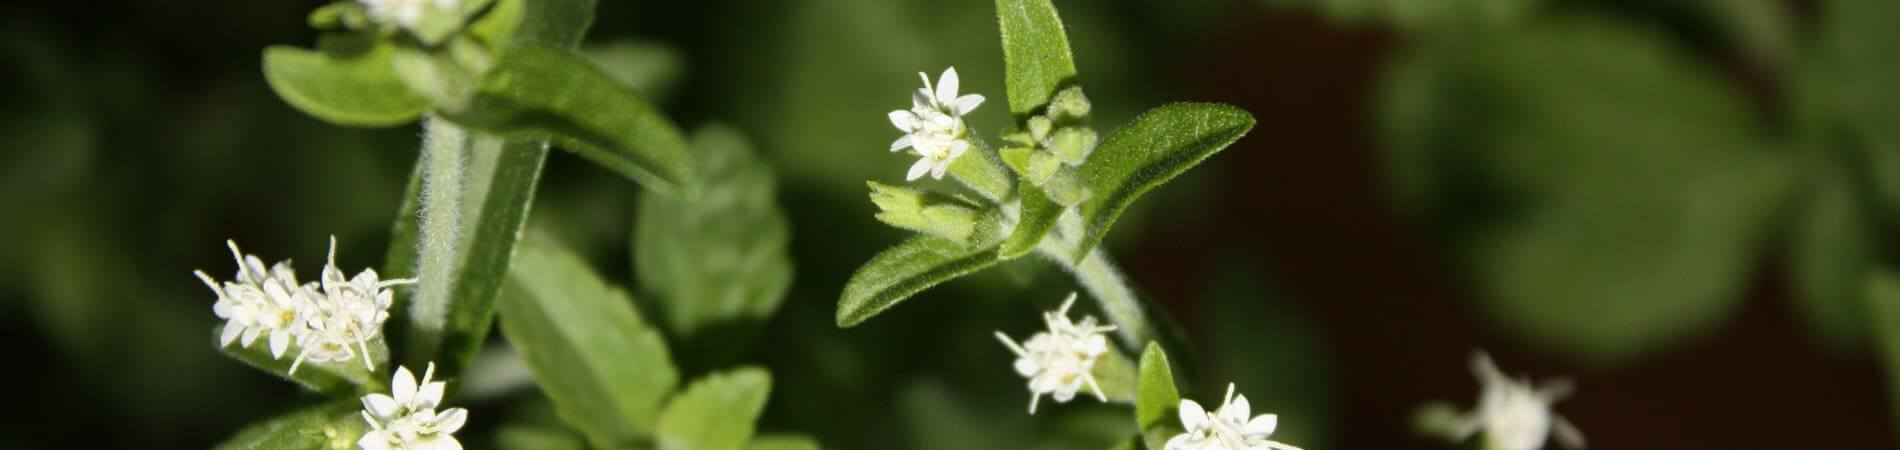 Qué es la Stevia - Flor de la planta de la Stevia -...